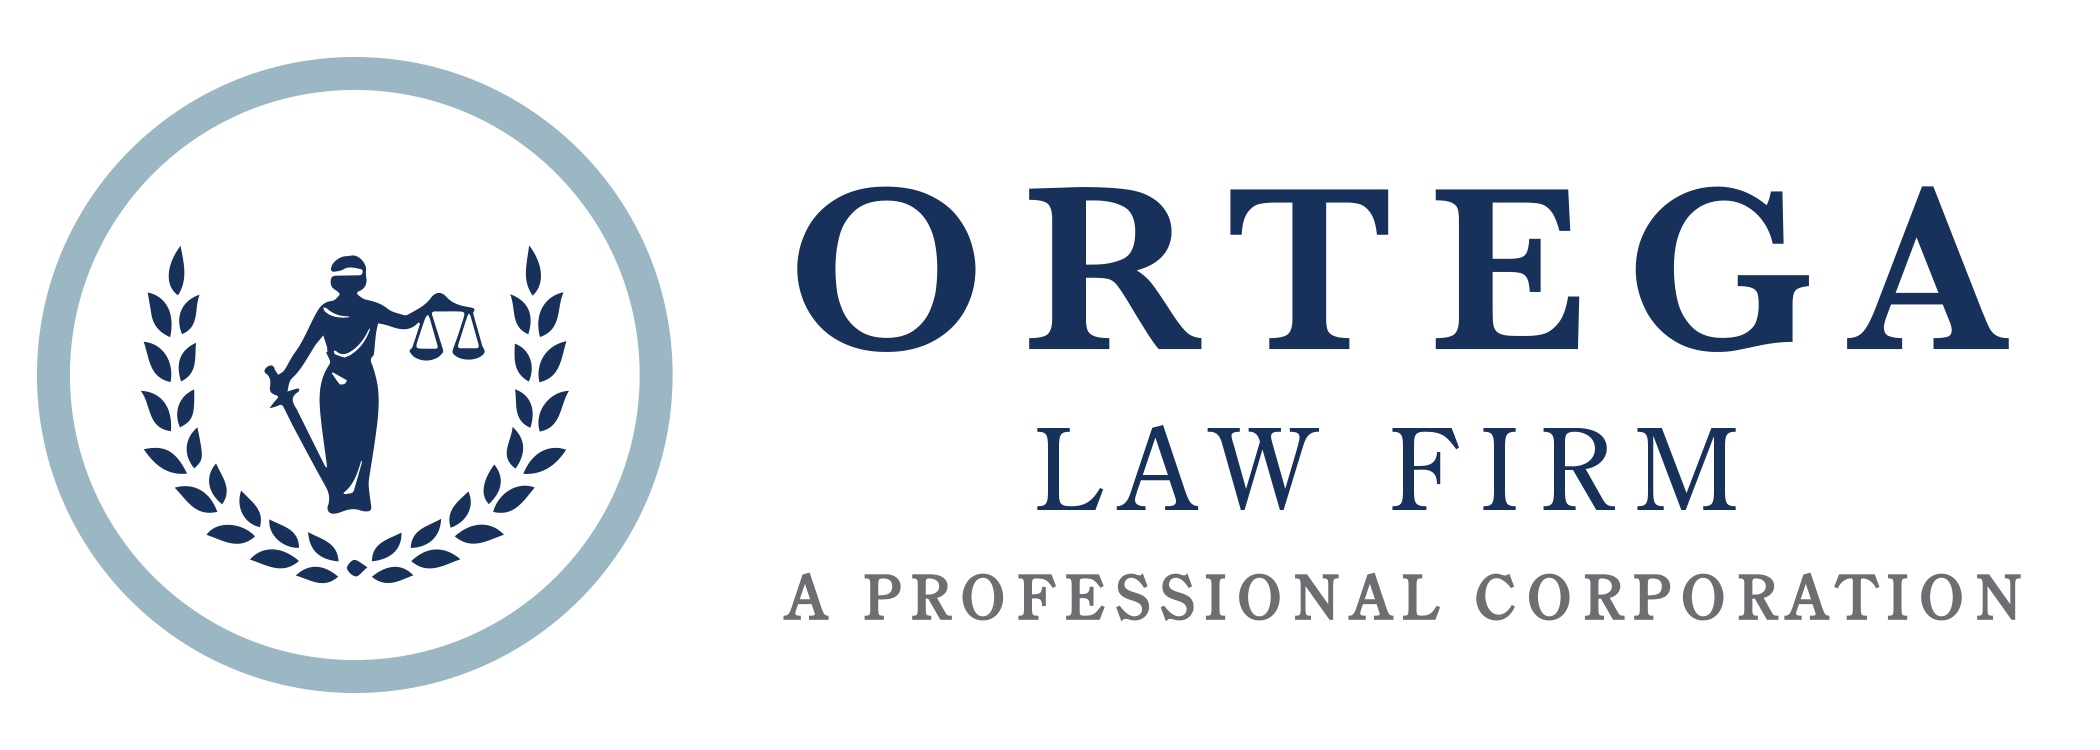 Ortega Law Firm